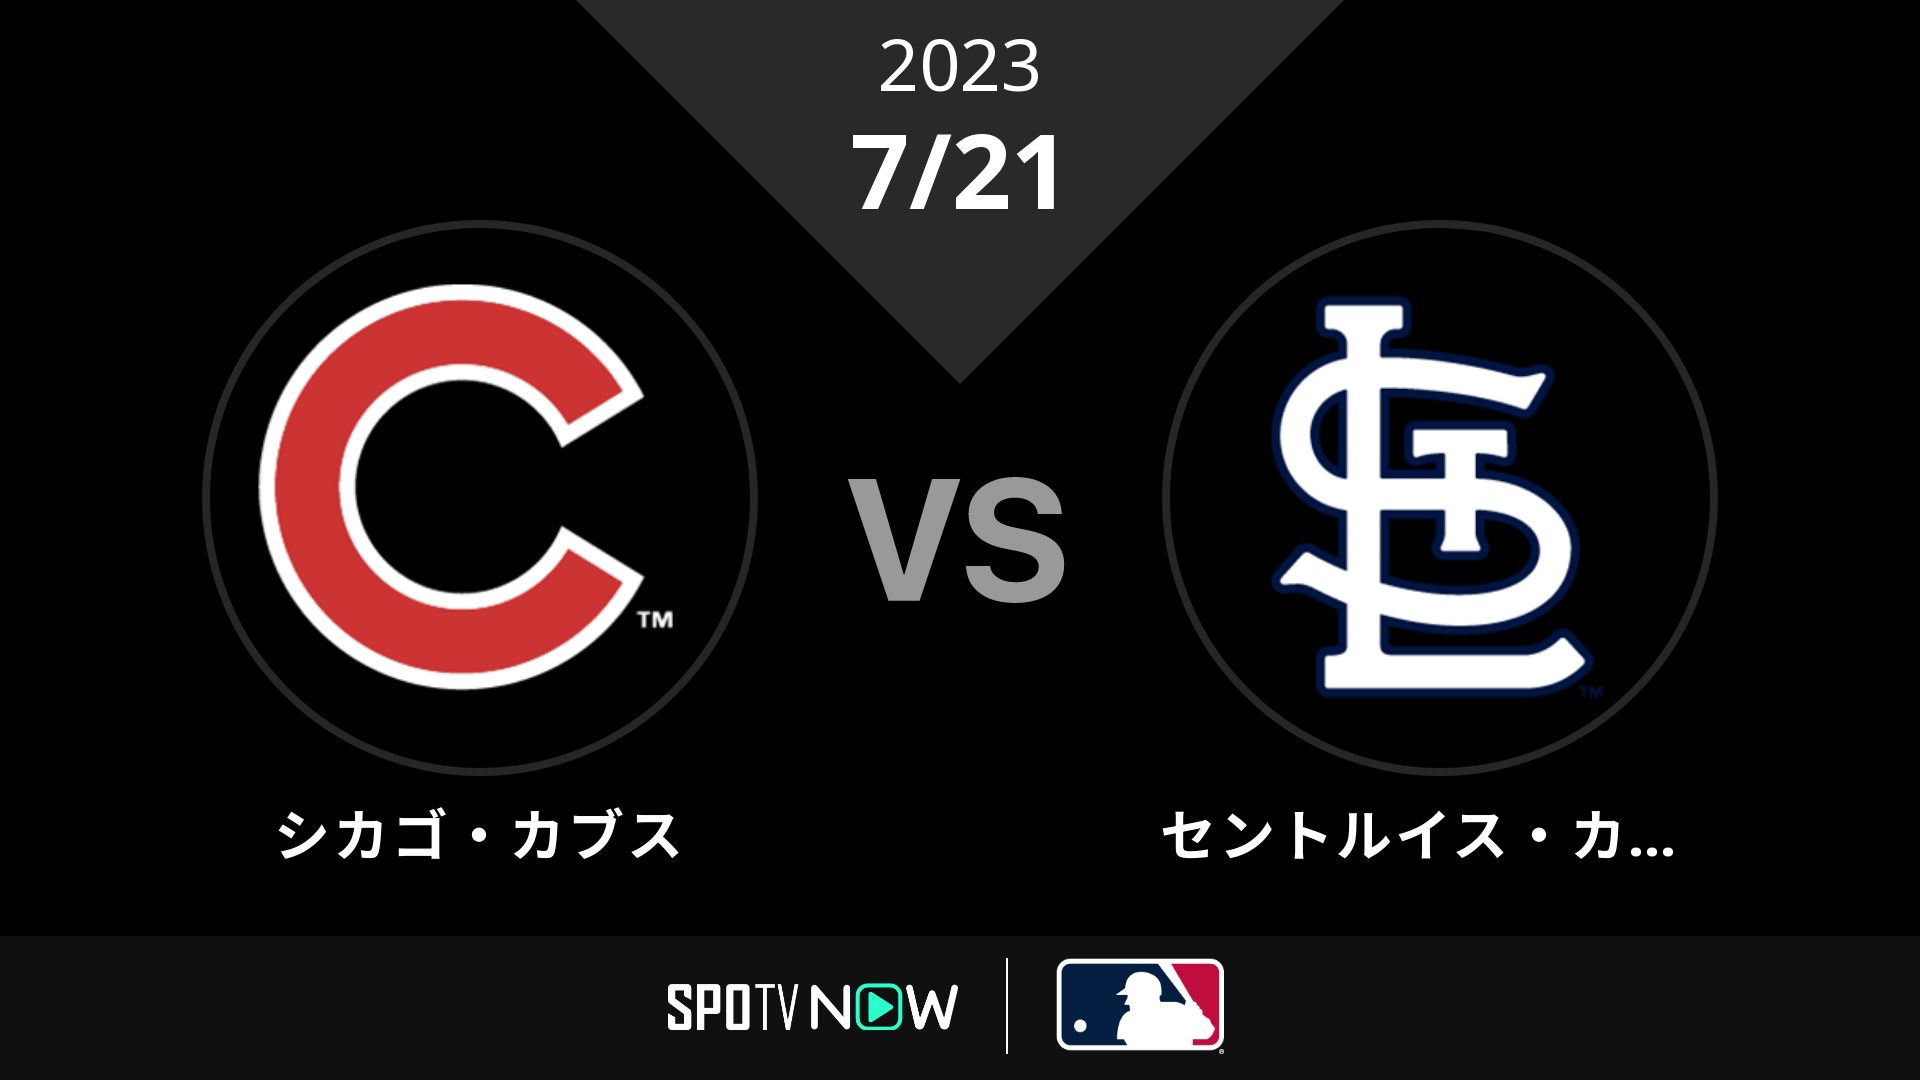 2023/7/21 カブス vs カージナルス [MLB]